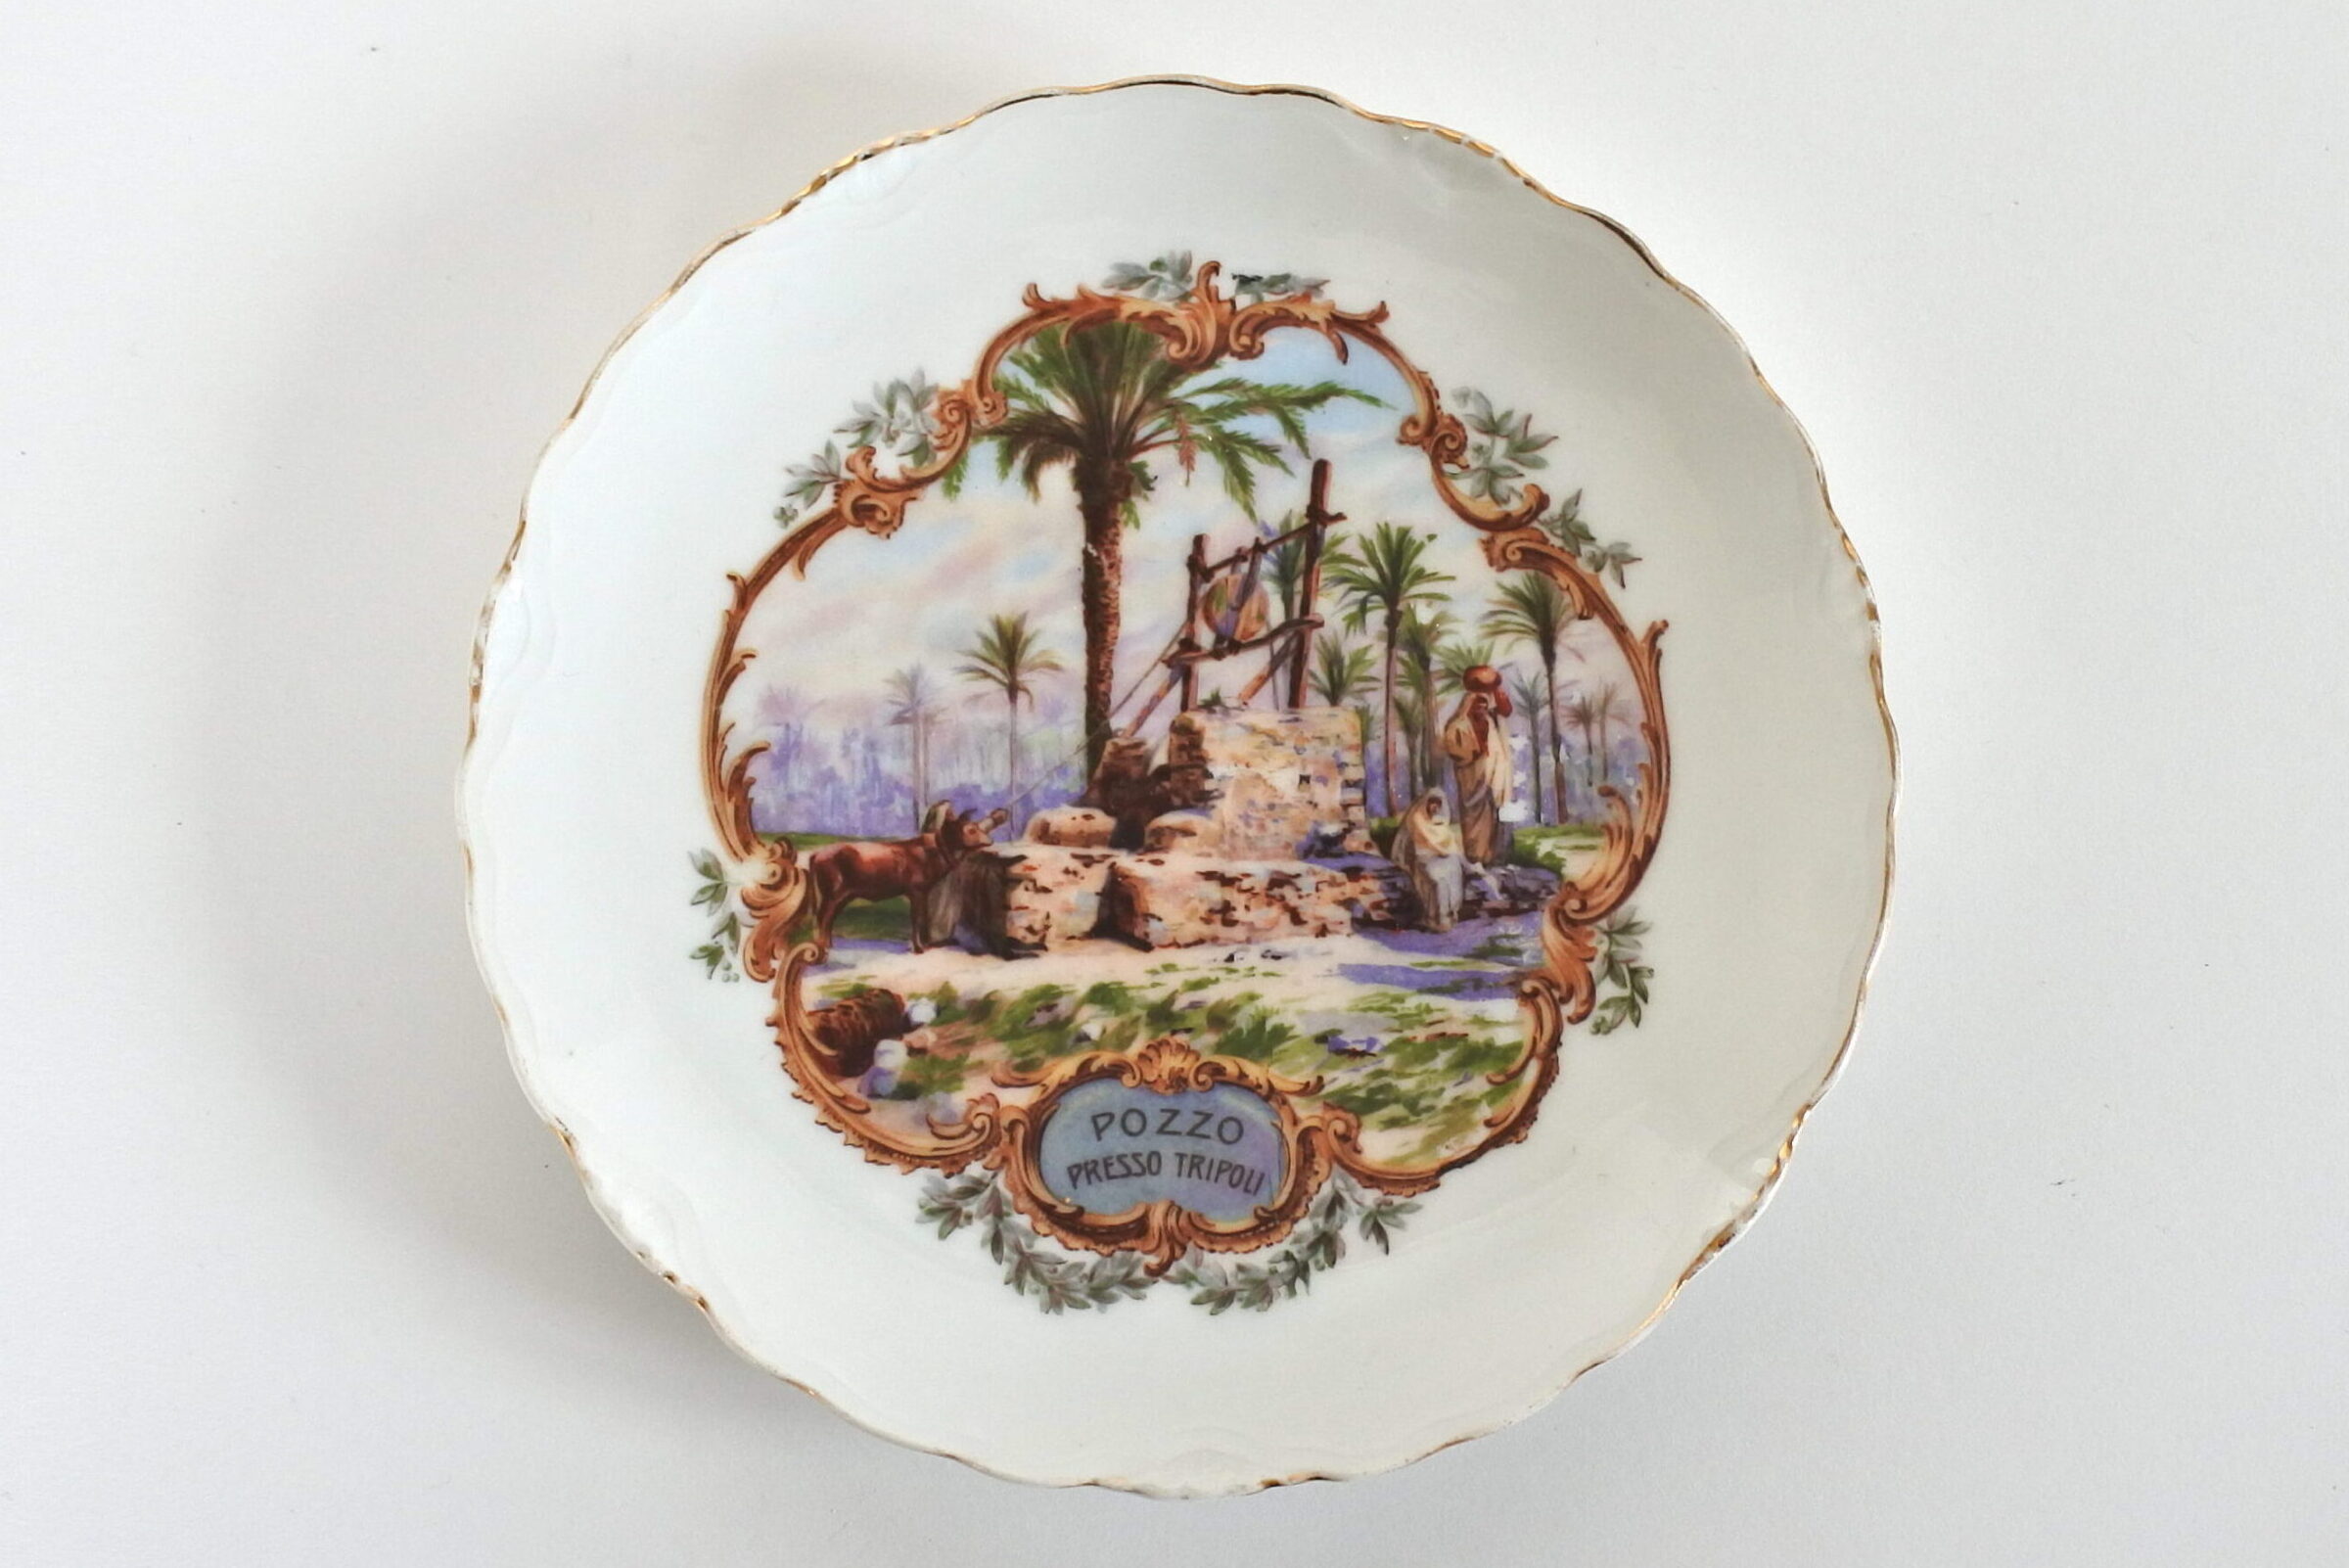 Piatto commemorativo in porcellana C.T. Altwasser con pozzo presso Tripoli